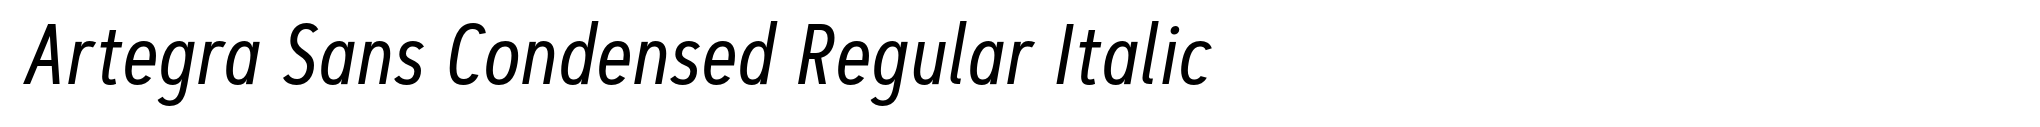 Artegra Sans Condensed Regular Italic image